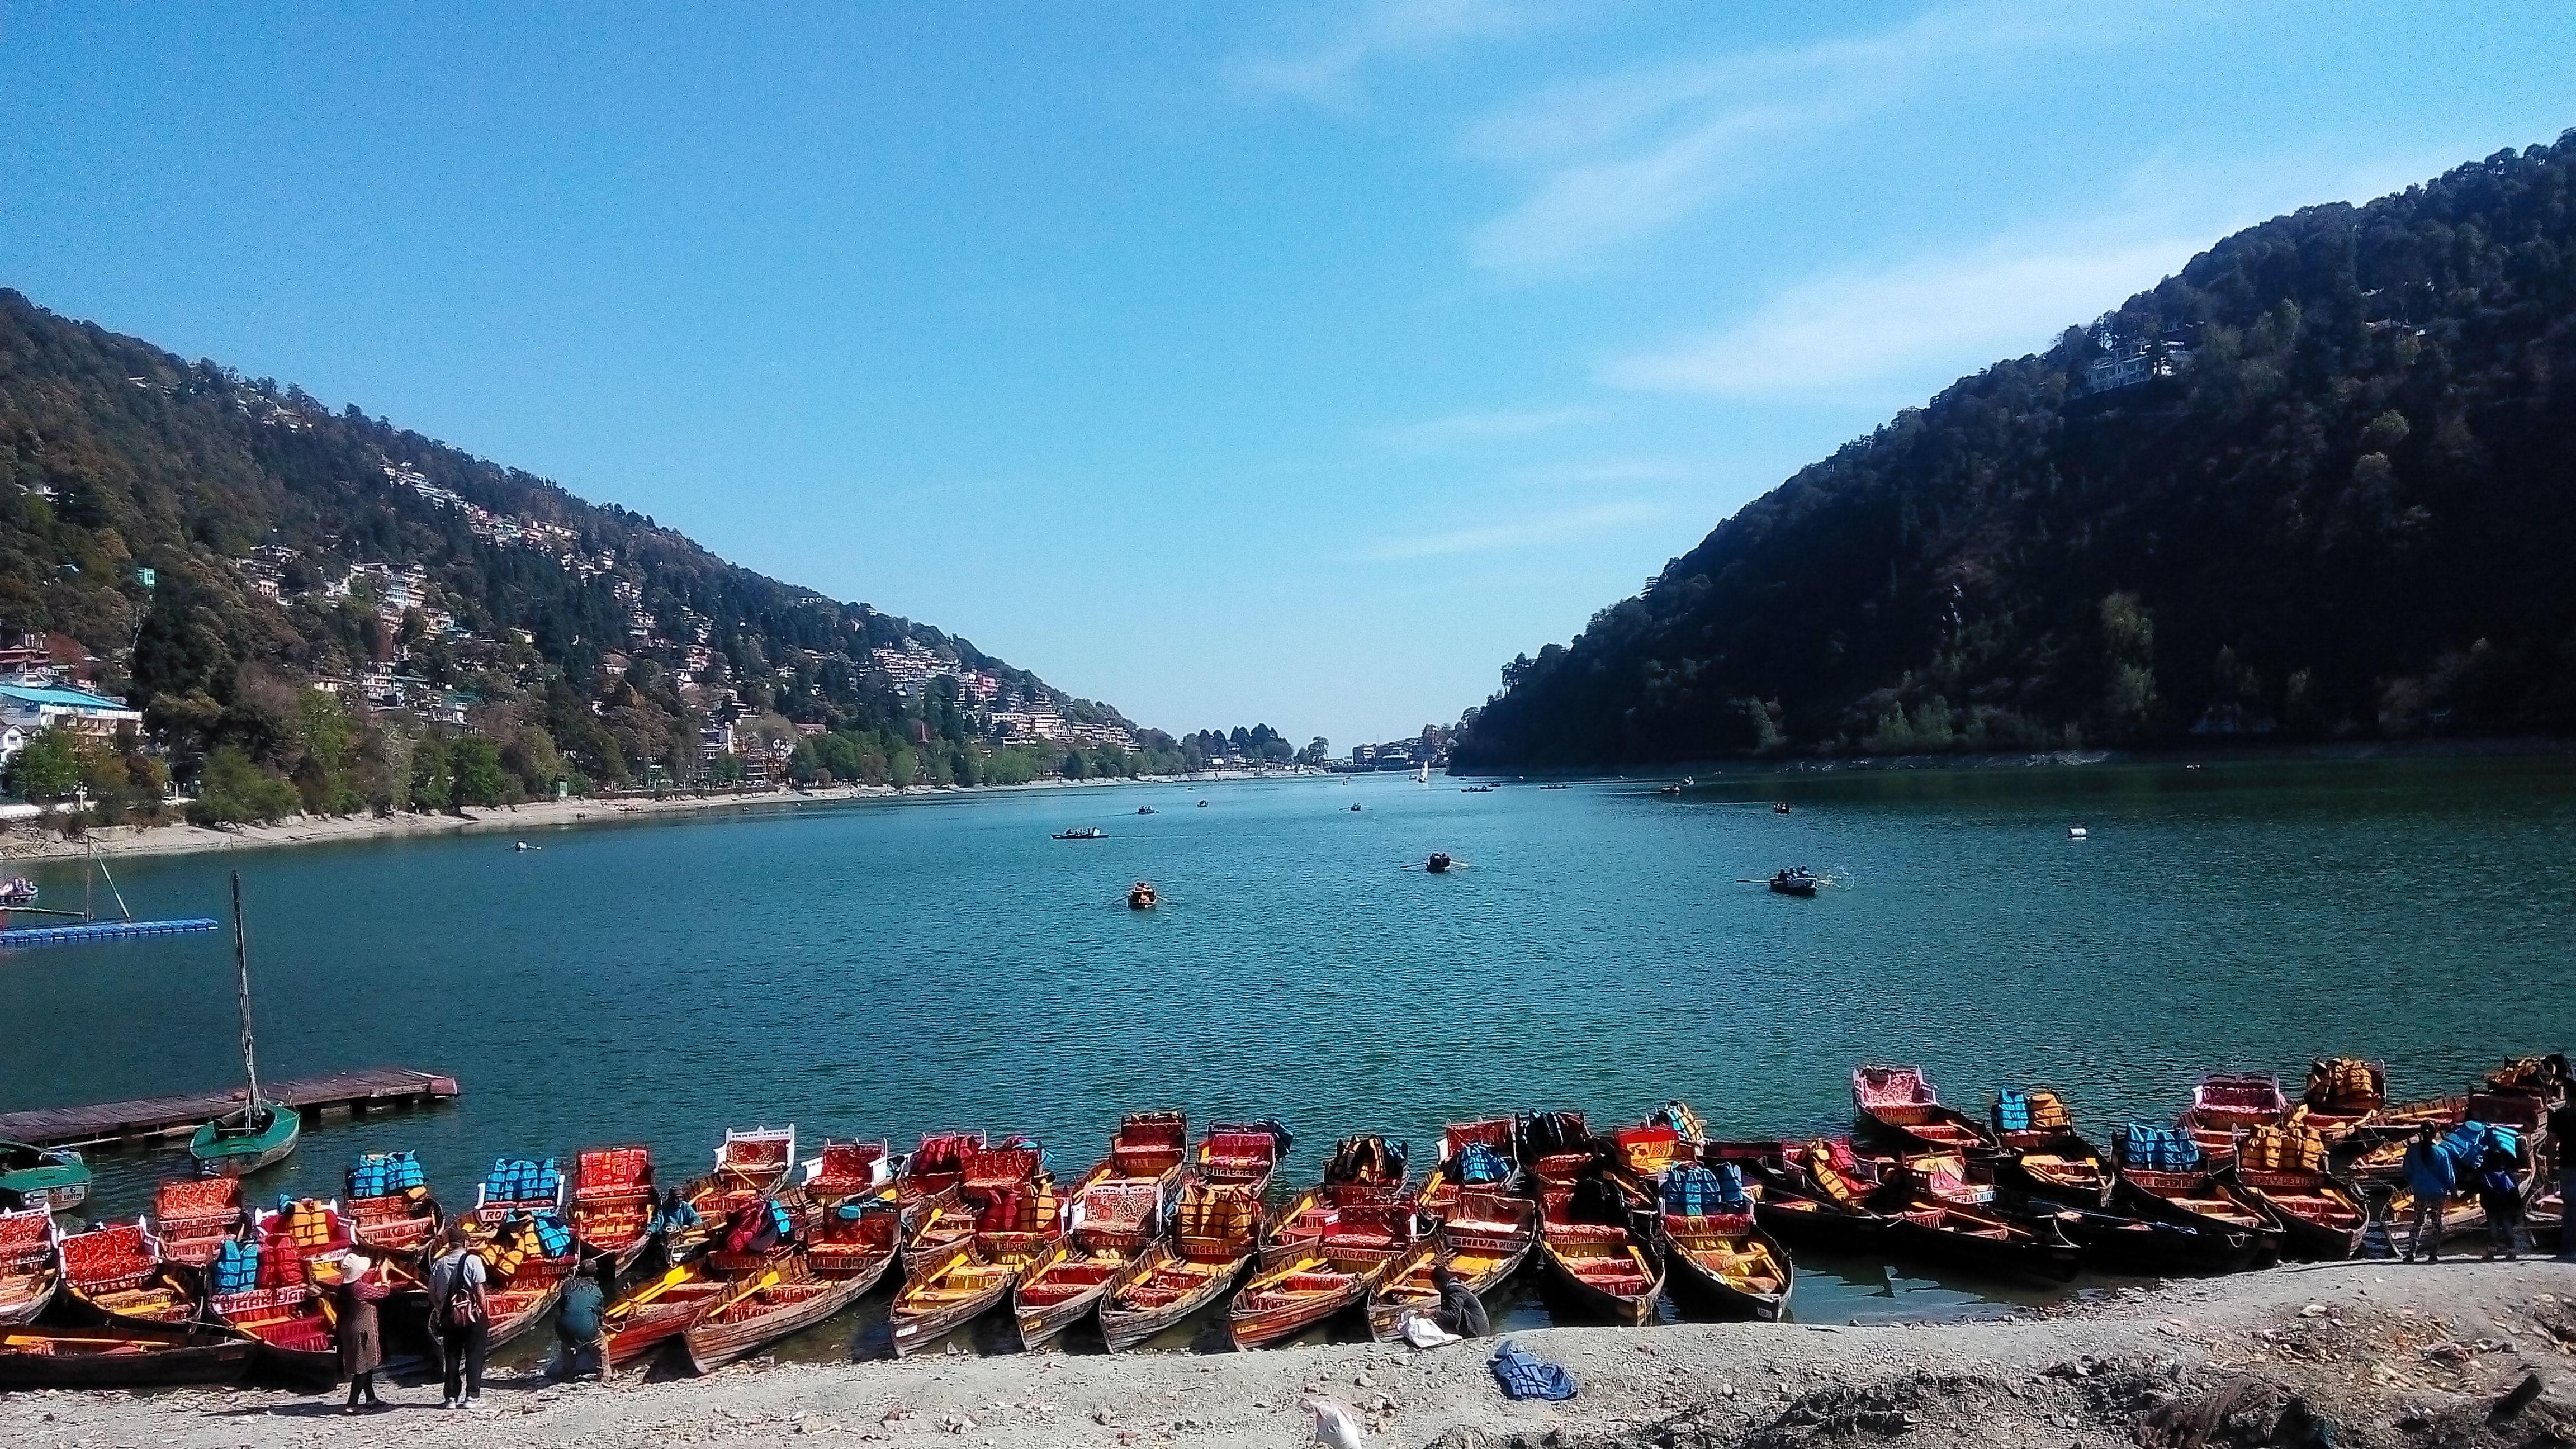 Naini Lake Nainital